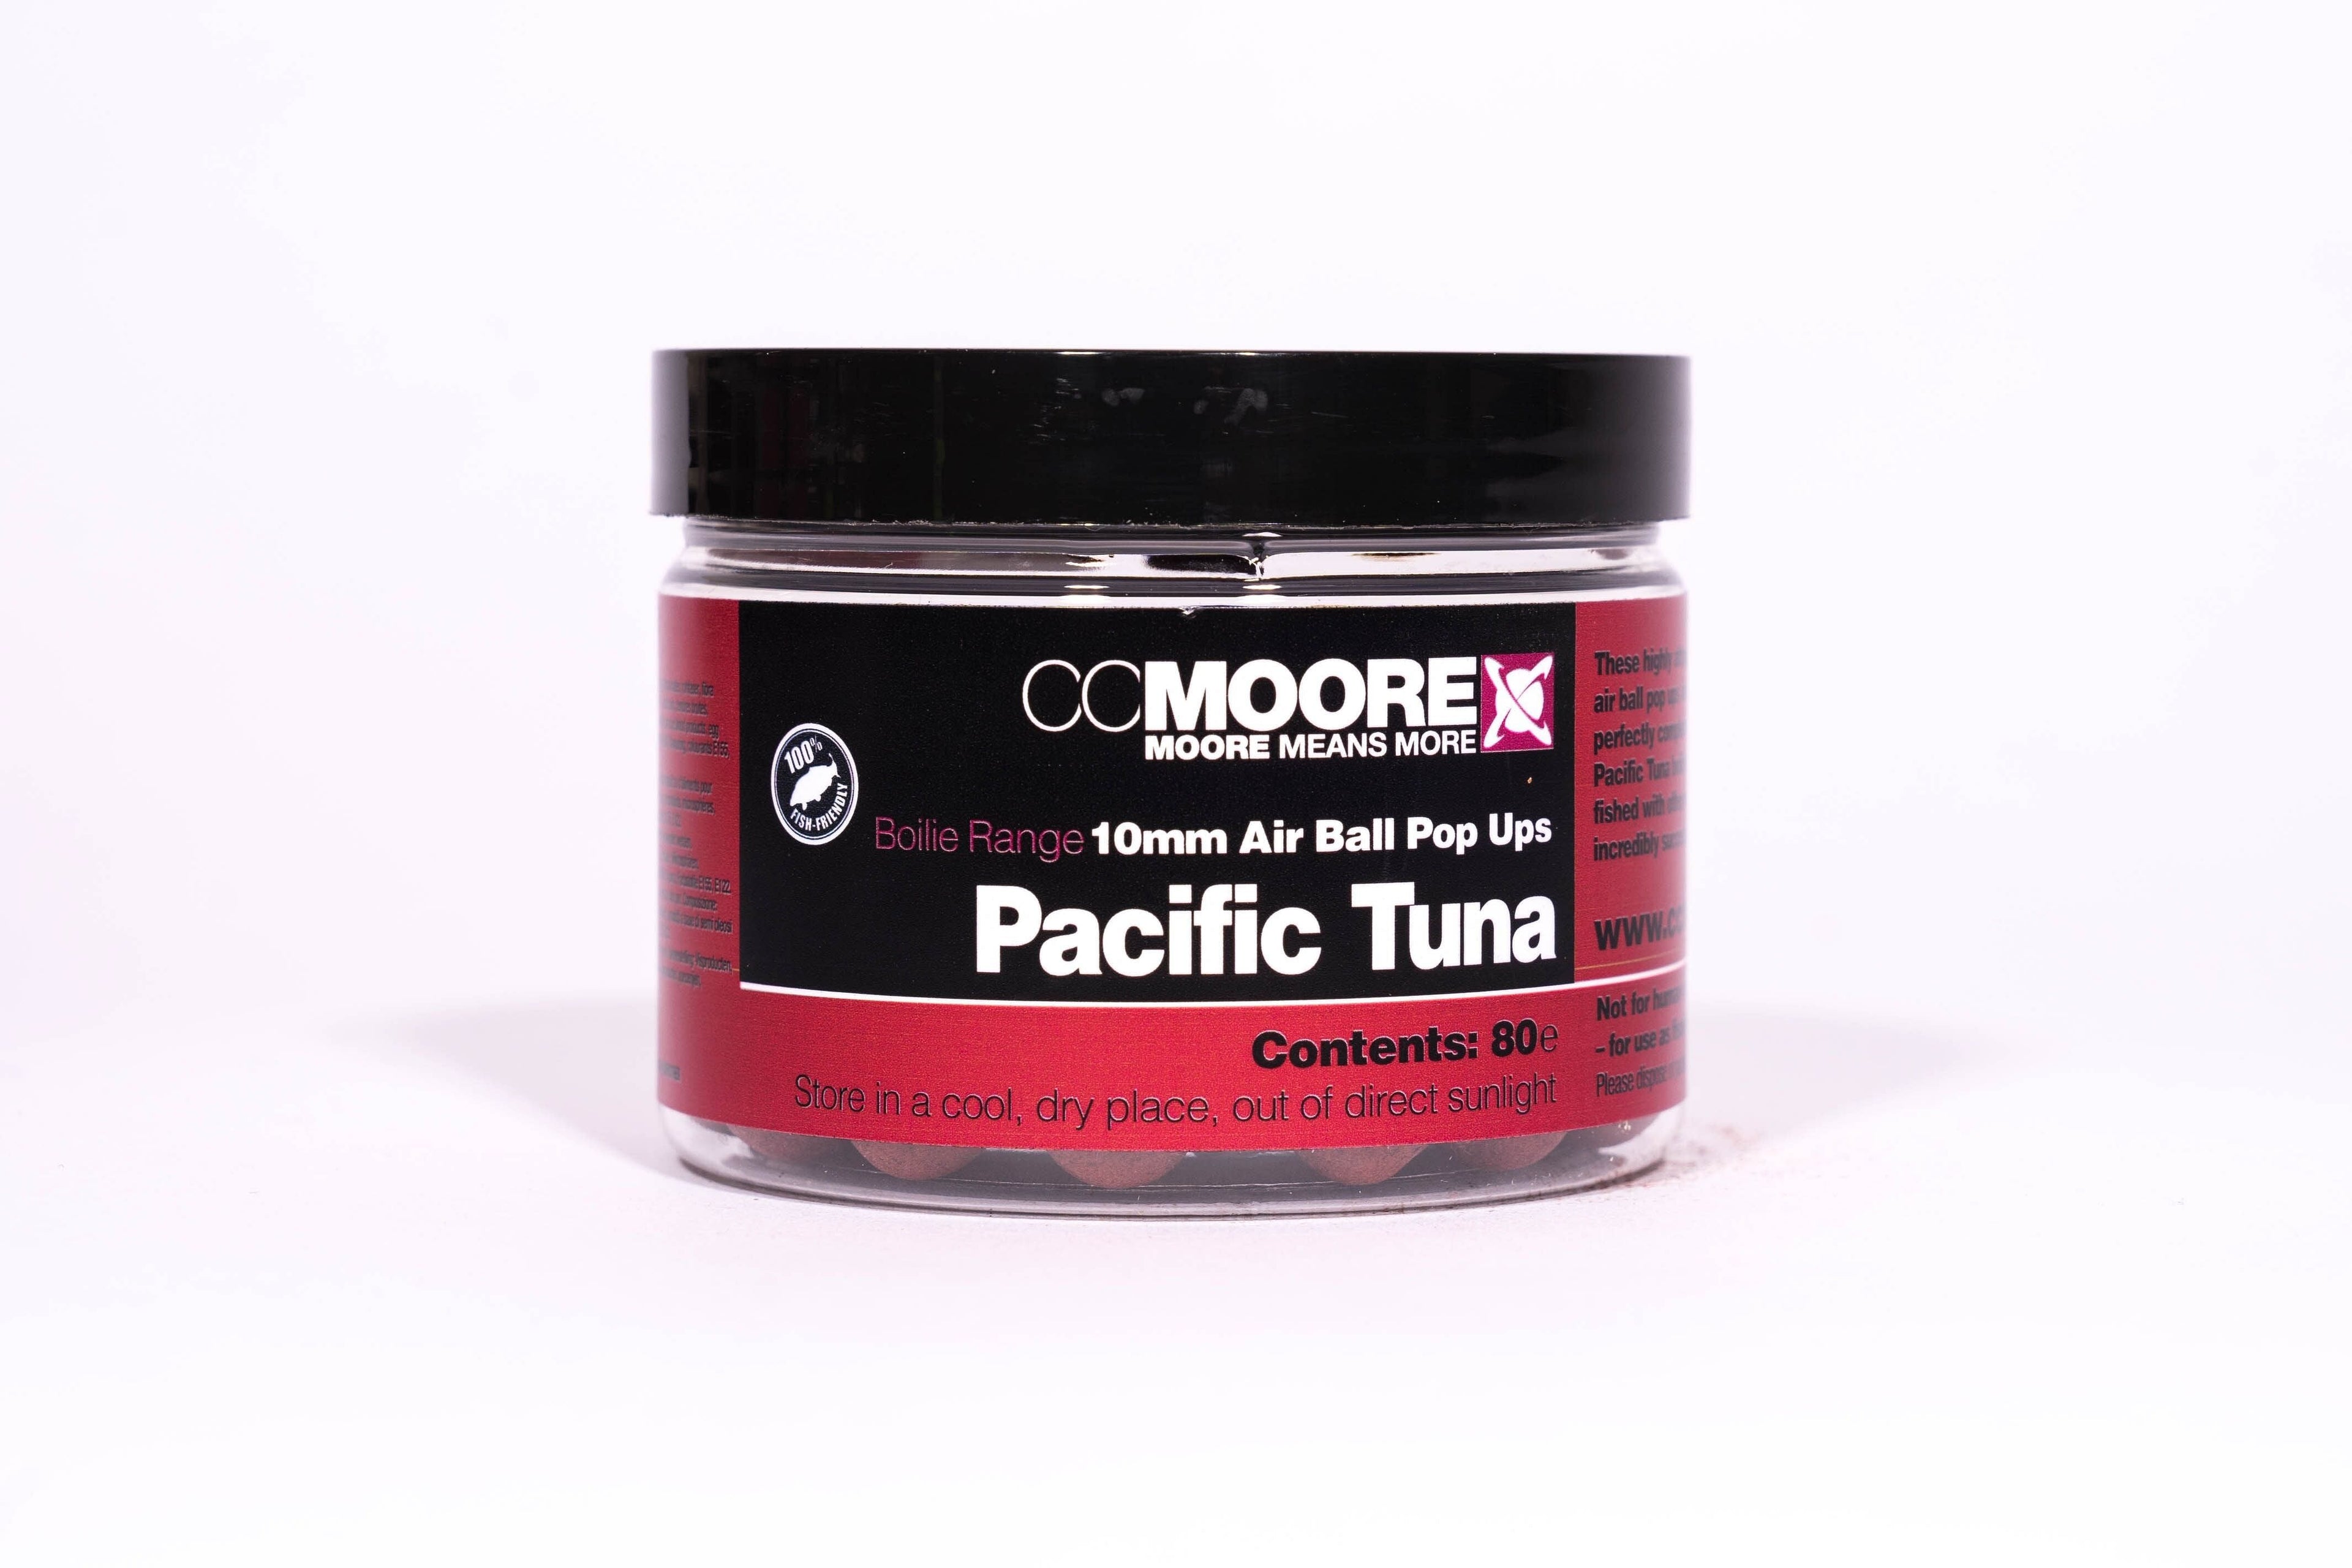 CC Moore Pacific Tuna Air Ball Pop Ups 10mm